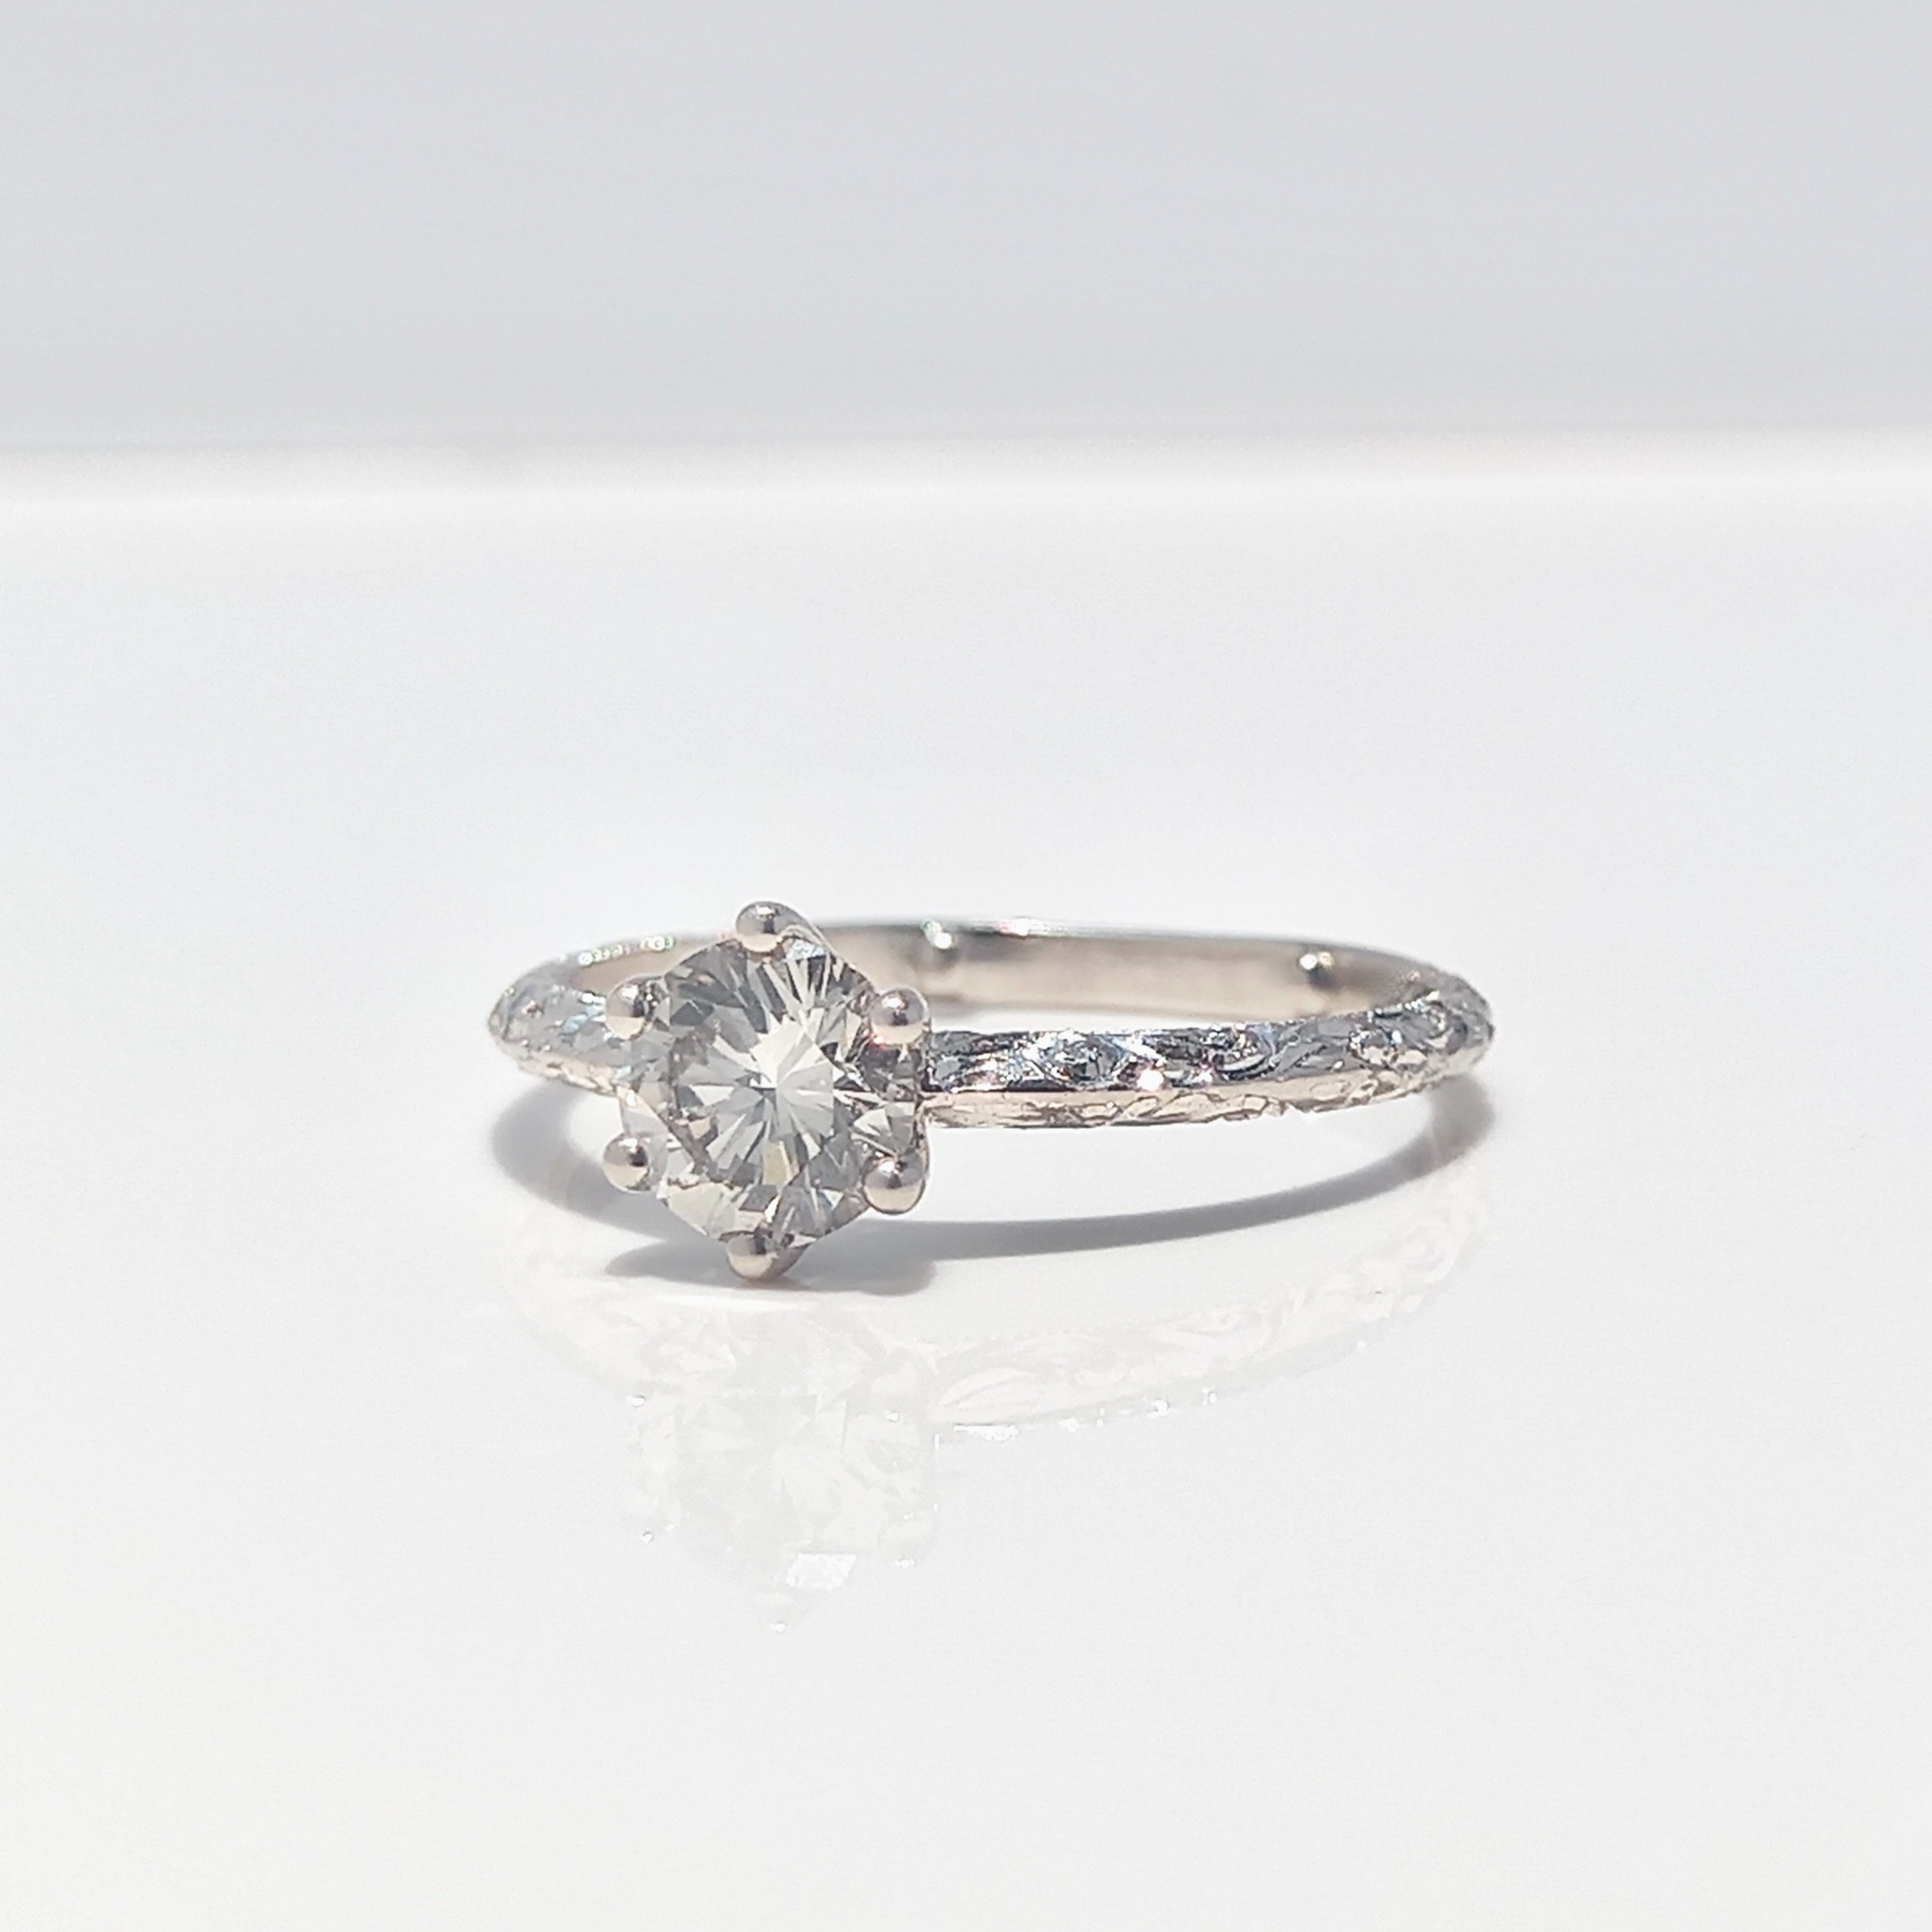 Round Brilliant Cut Engraved Solitaire Diamond Ring, diamond ring, engagement ring, engraved ring, round diamond, danielle camera jewellery